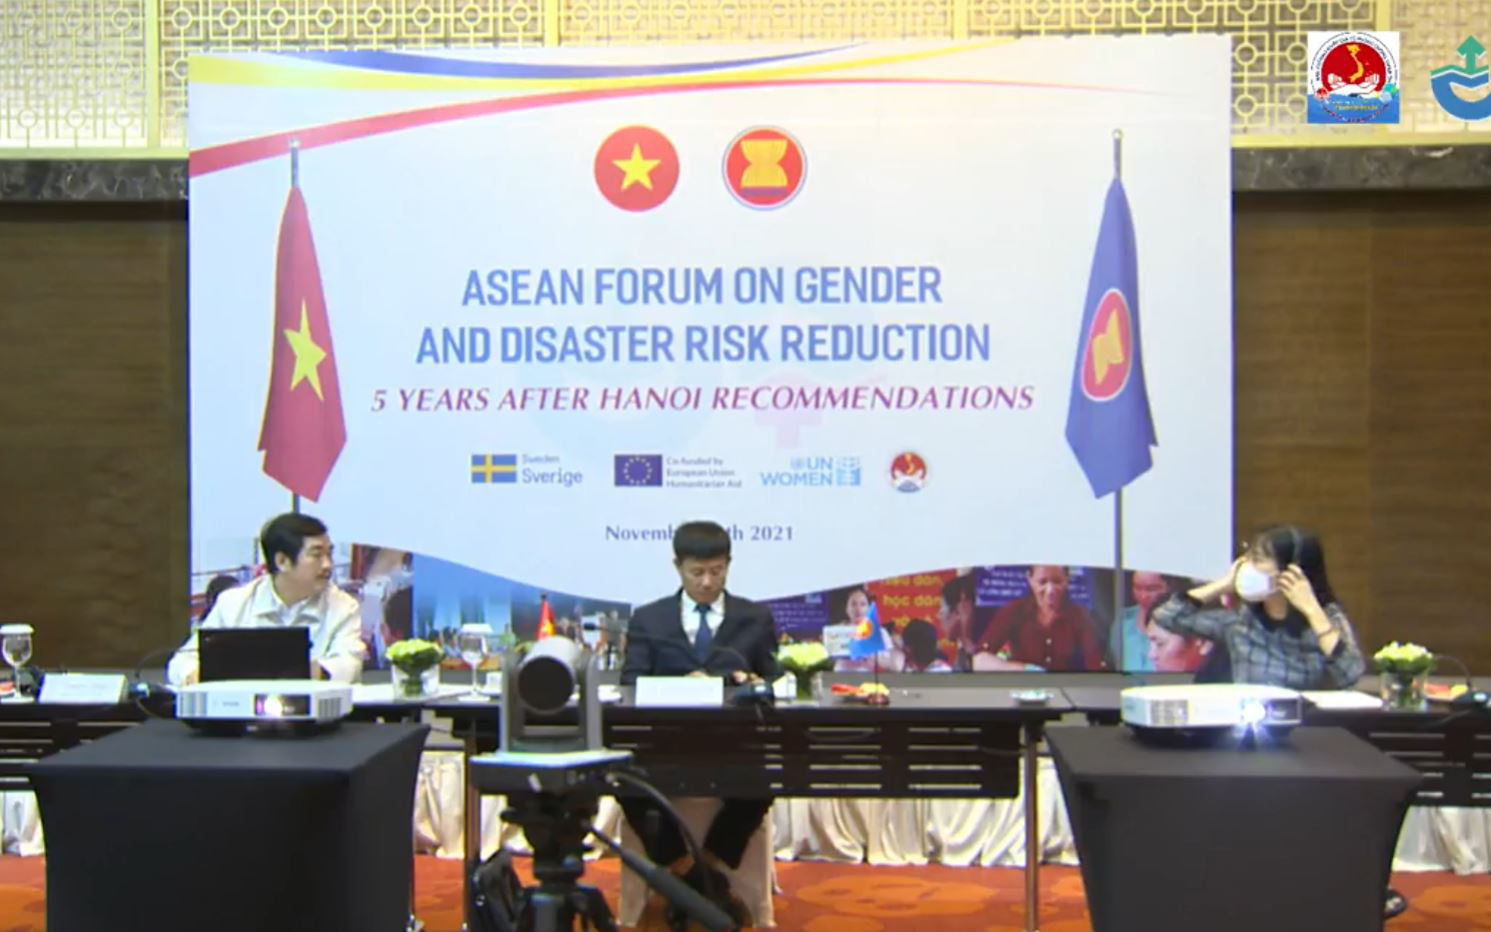 [TRỰC TIẾP] Diễn đàn ASEAN về giới và giảm nhẹ rủi ro thiên tai – 5 năm sau khuyến nghị của Hà Nội